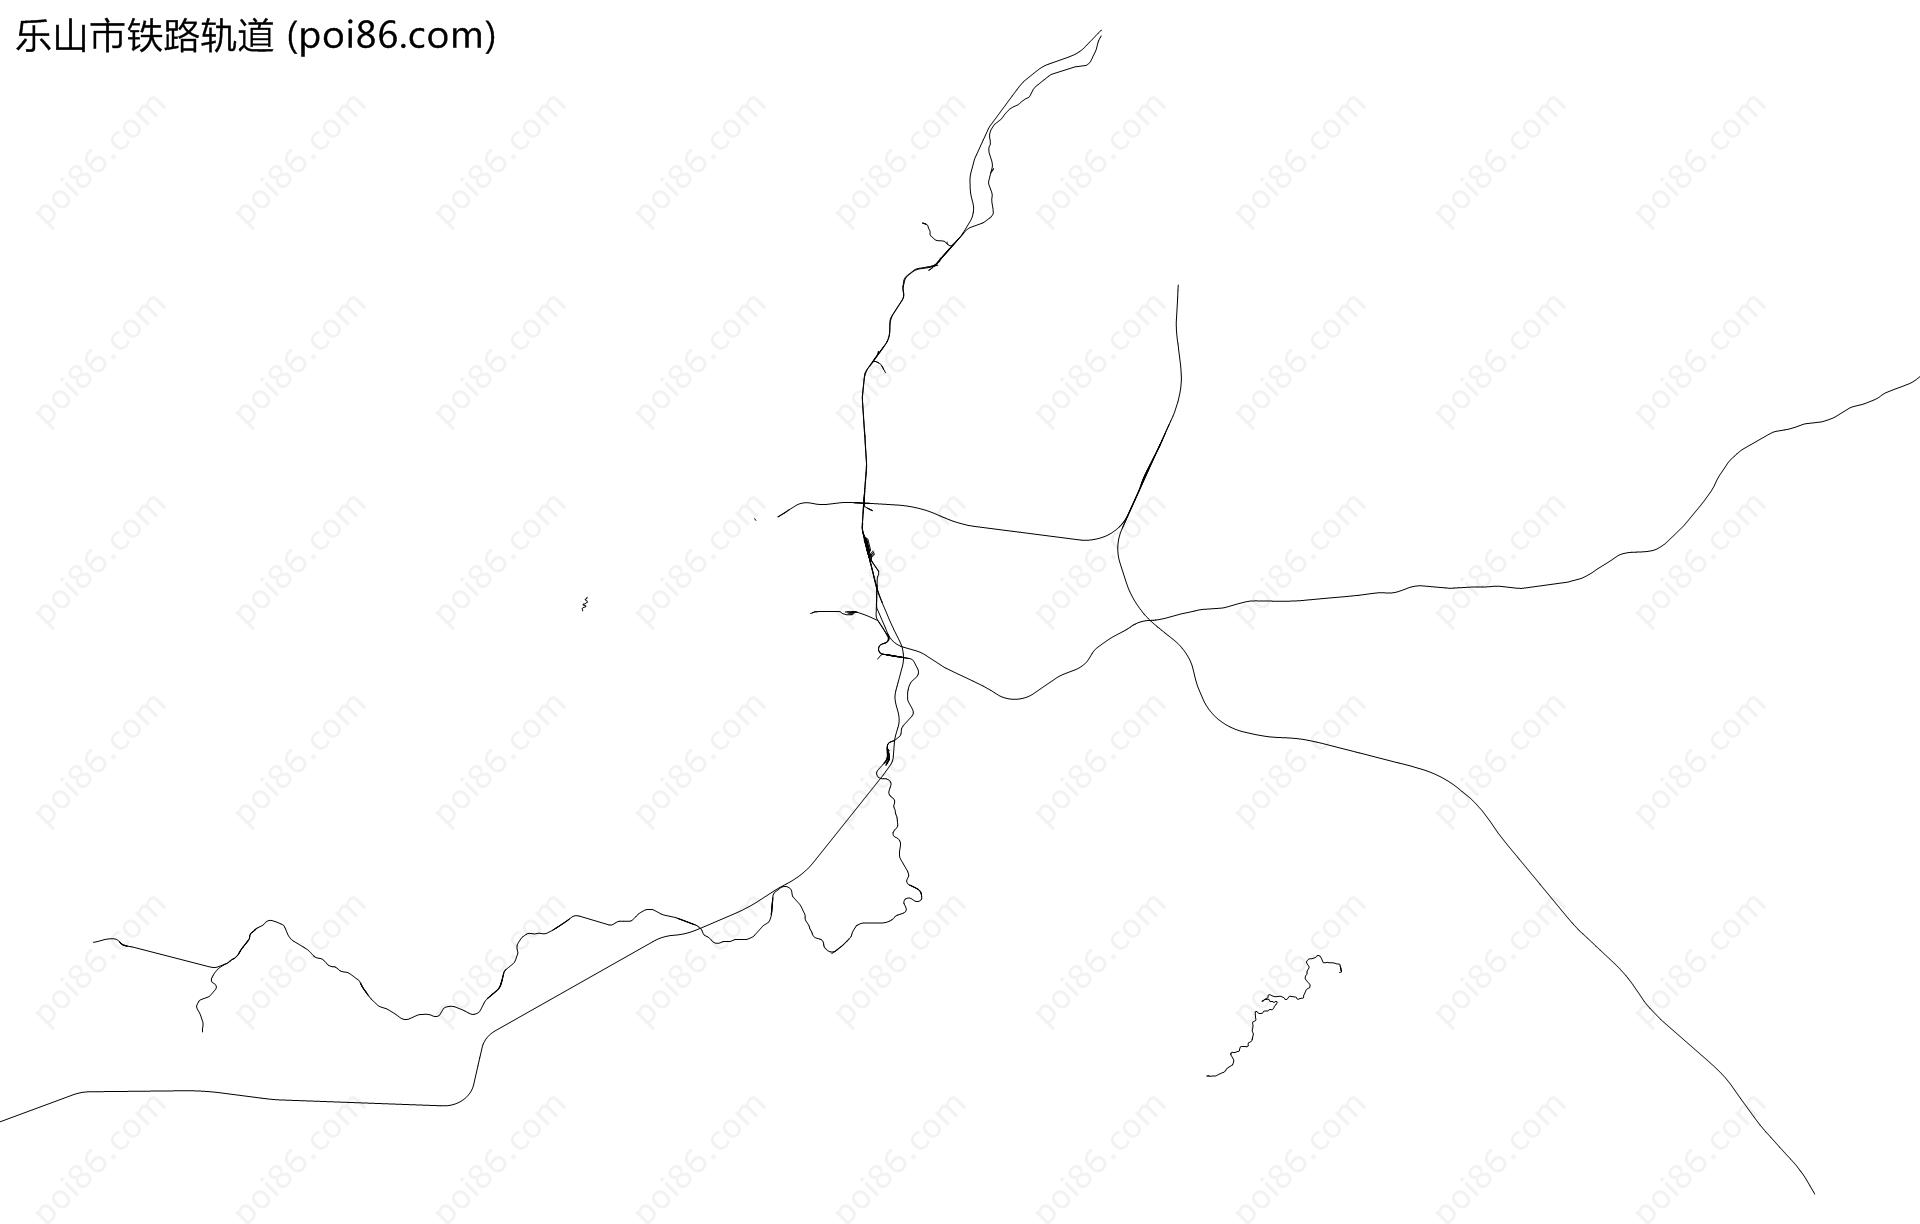 乐山市铁路轨道地图